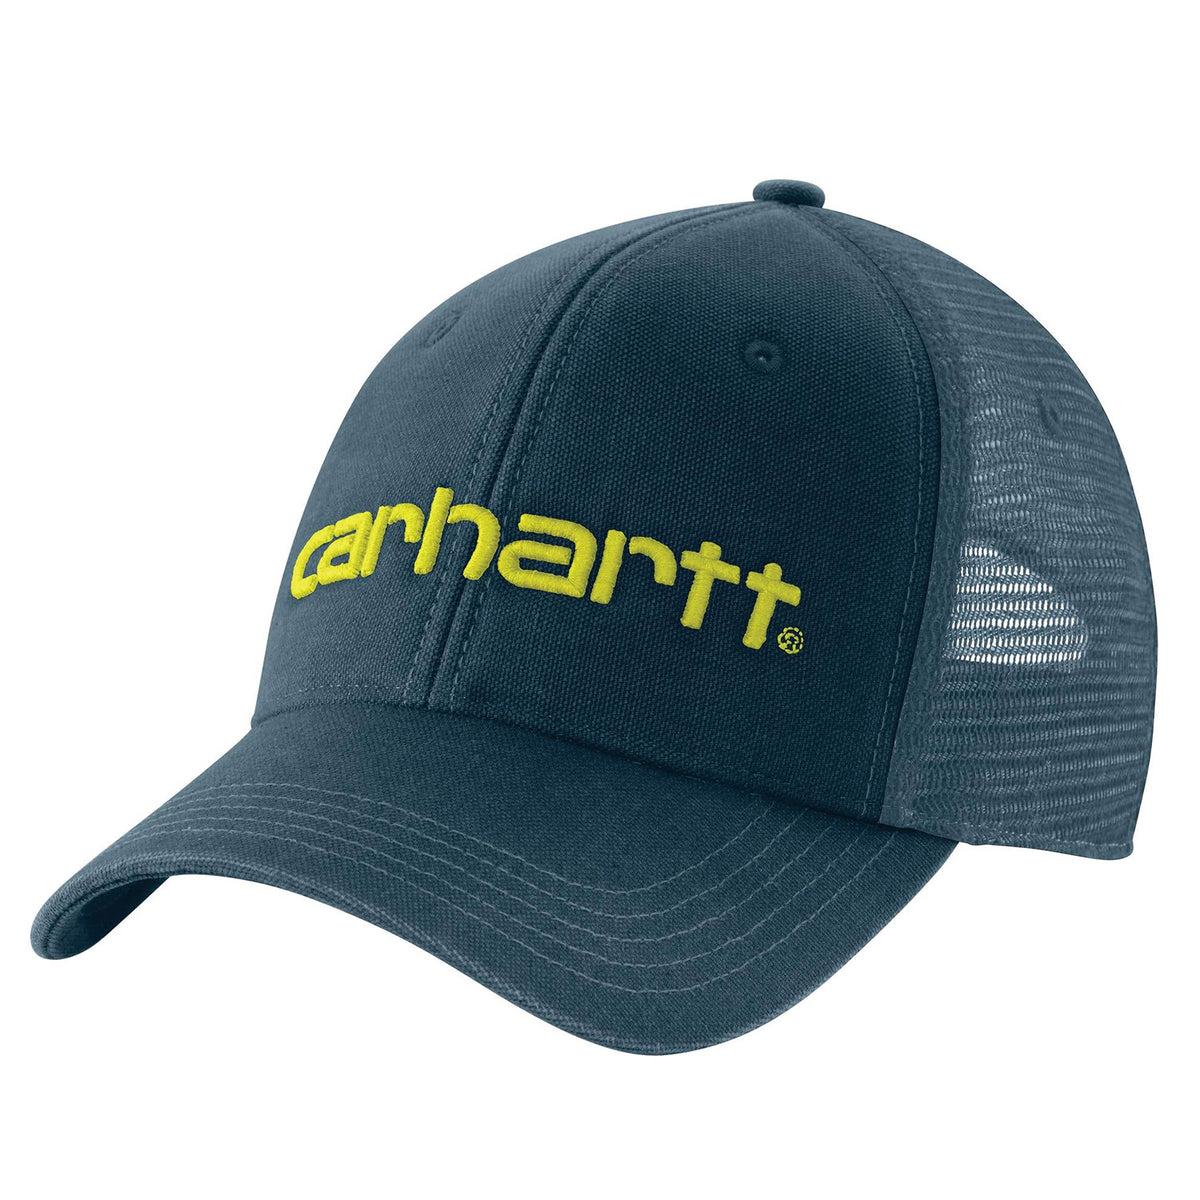 Carhartt Dunmore Cap - Work World - Workwear, Work Boots, Safety Gear